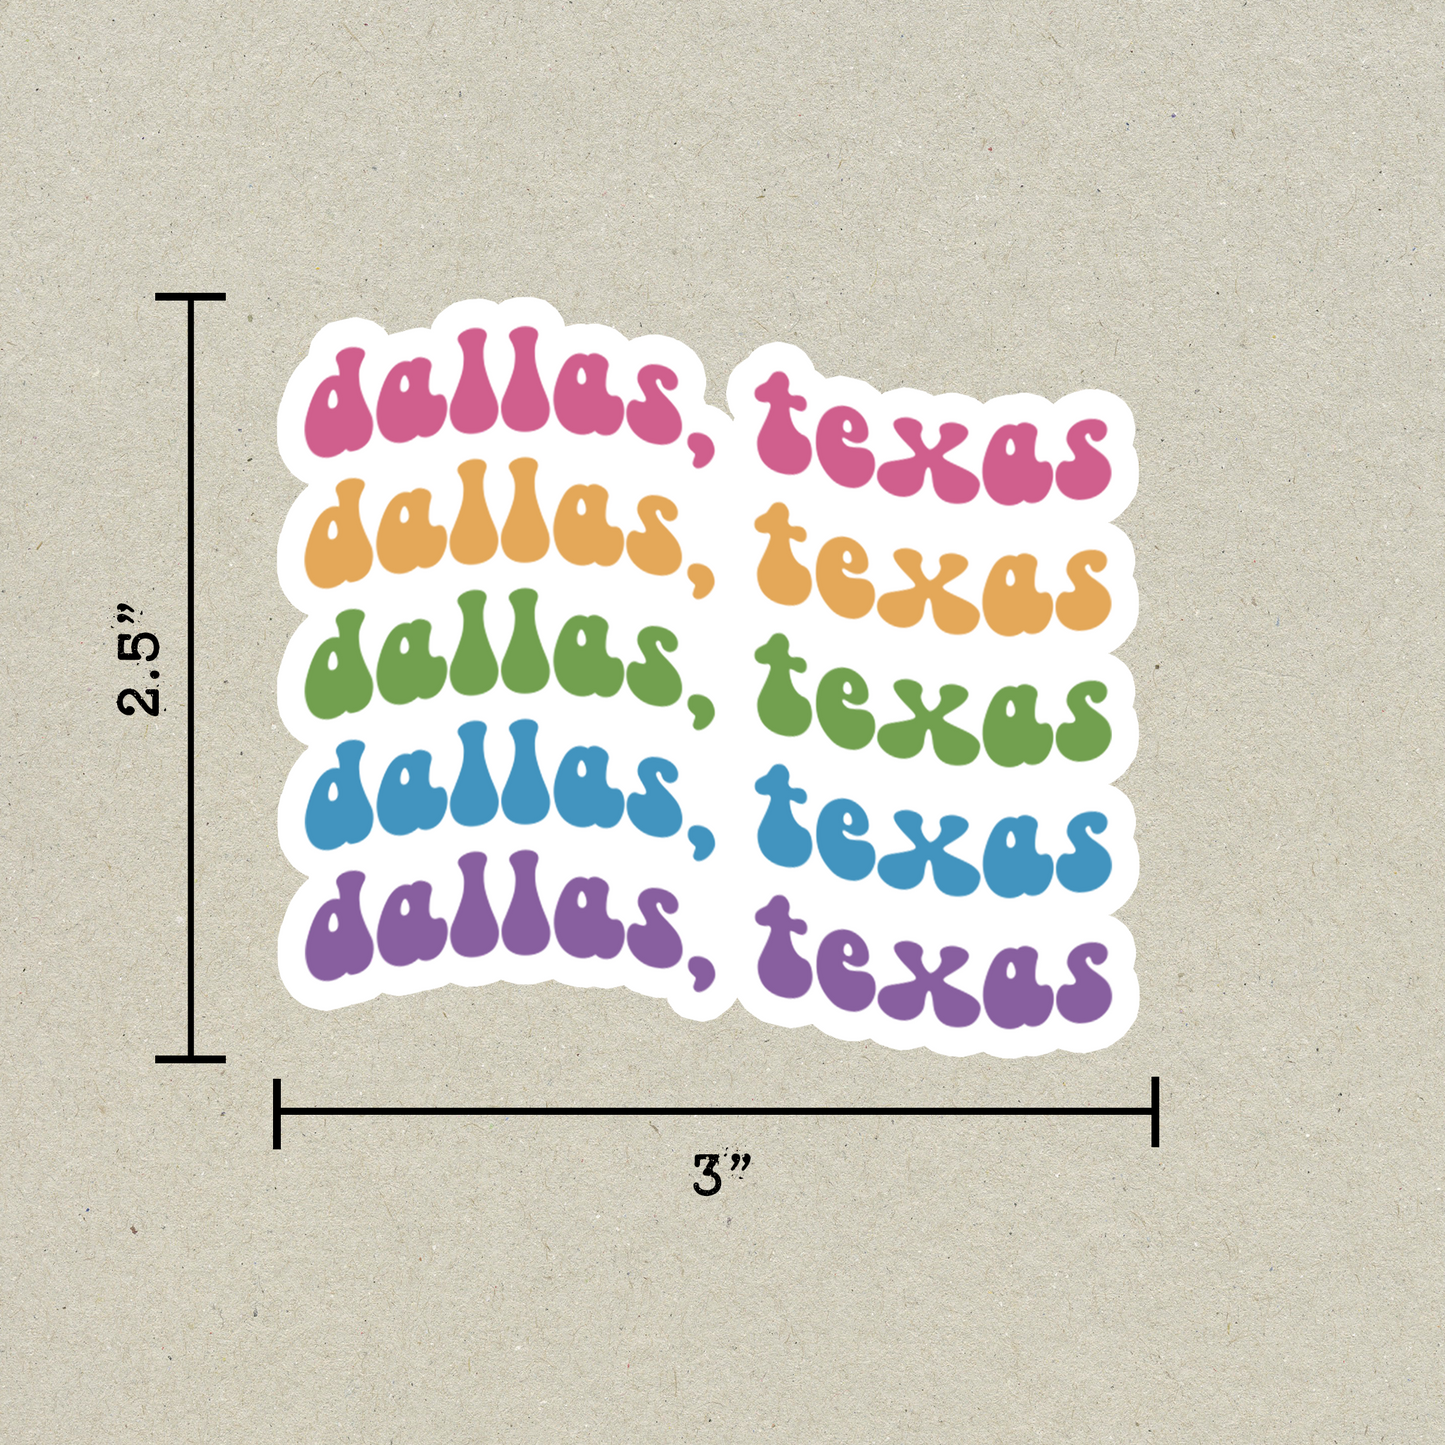 Dallas, Texas Retro Sticker